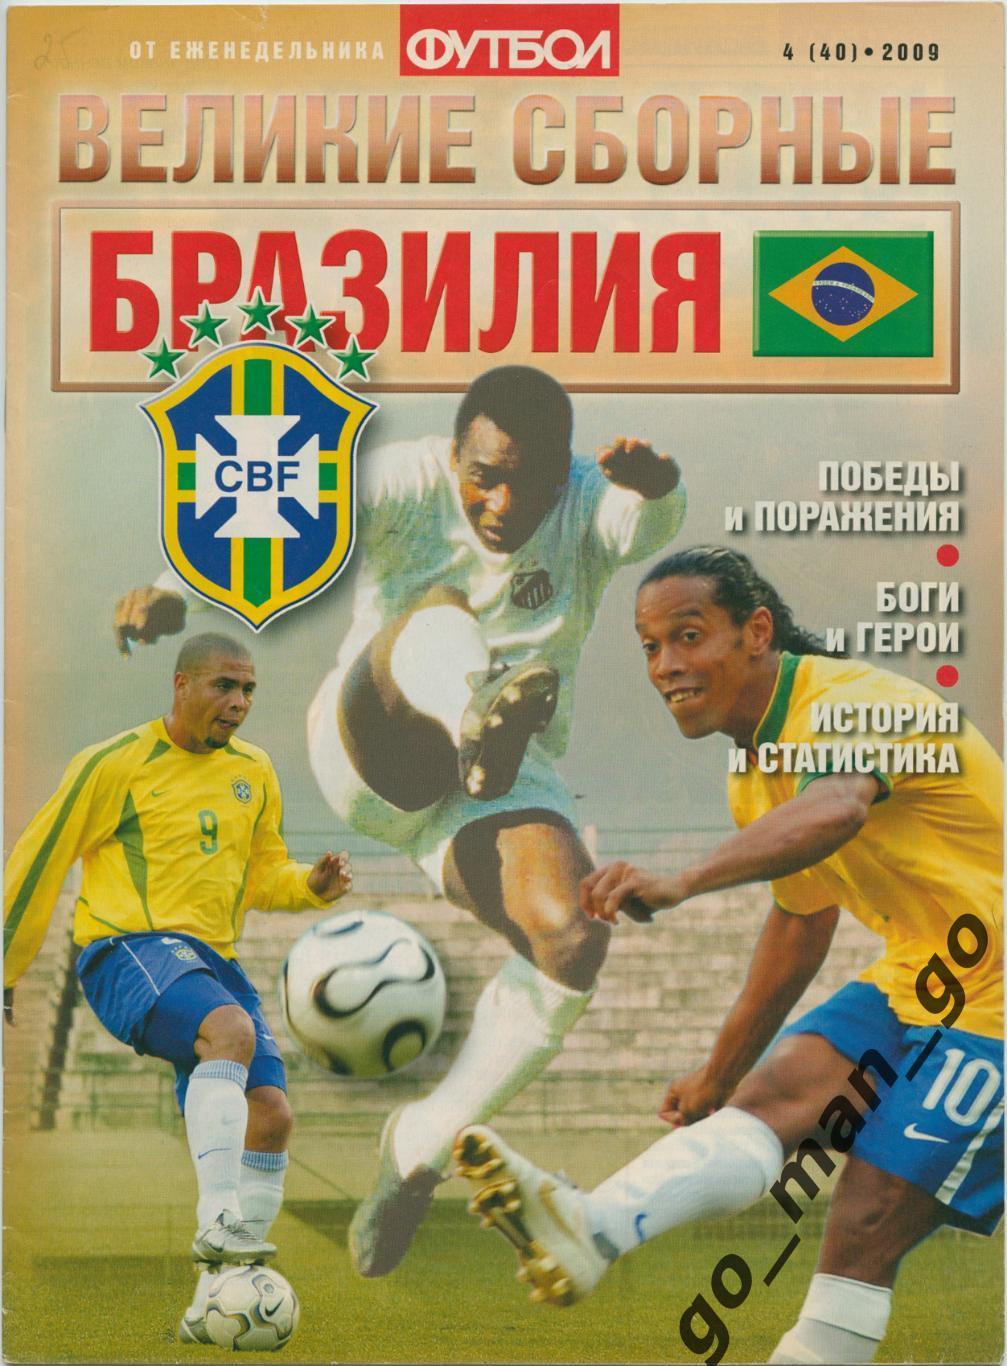 Еженедельник Футбол, Великие сборные, Бразилия. 2009, № 4.